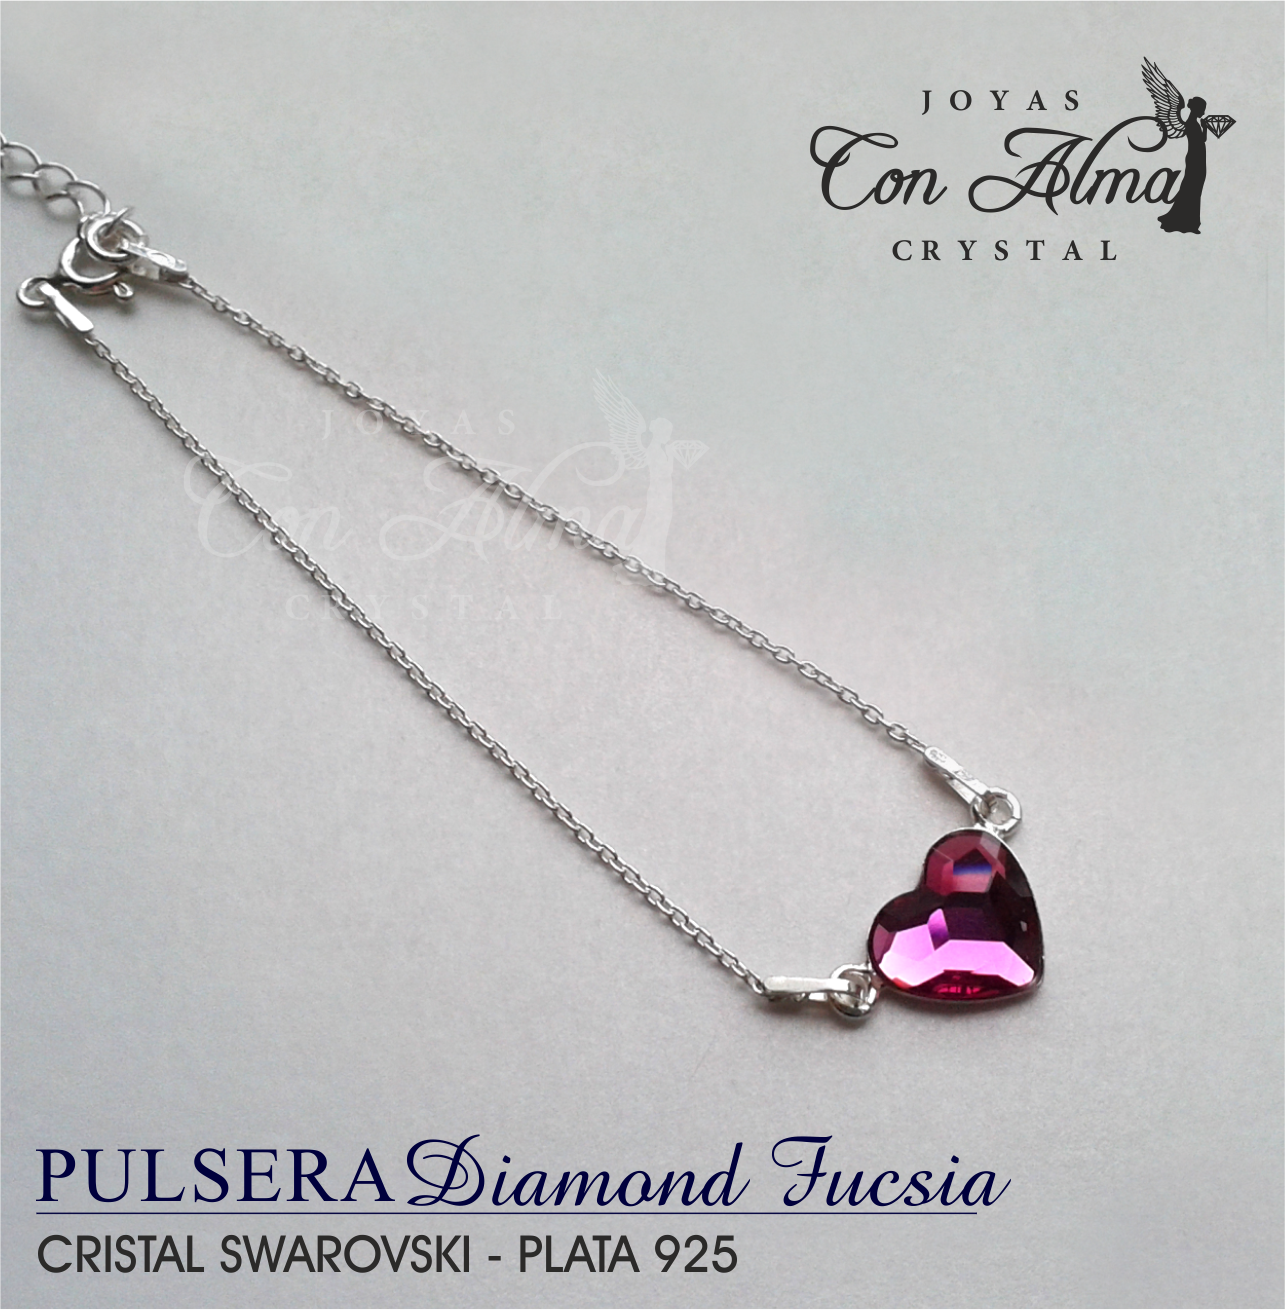 Pulsera Diamond  Fucsia
25,99.€